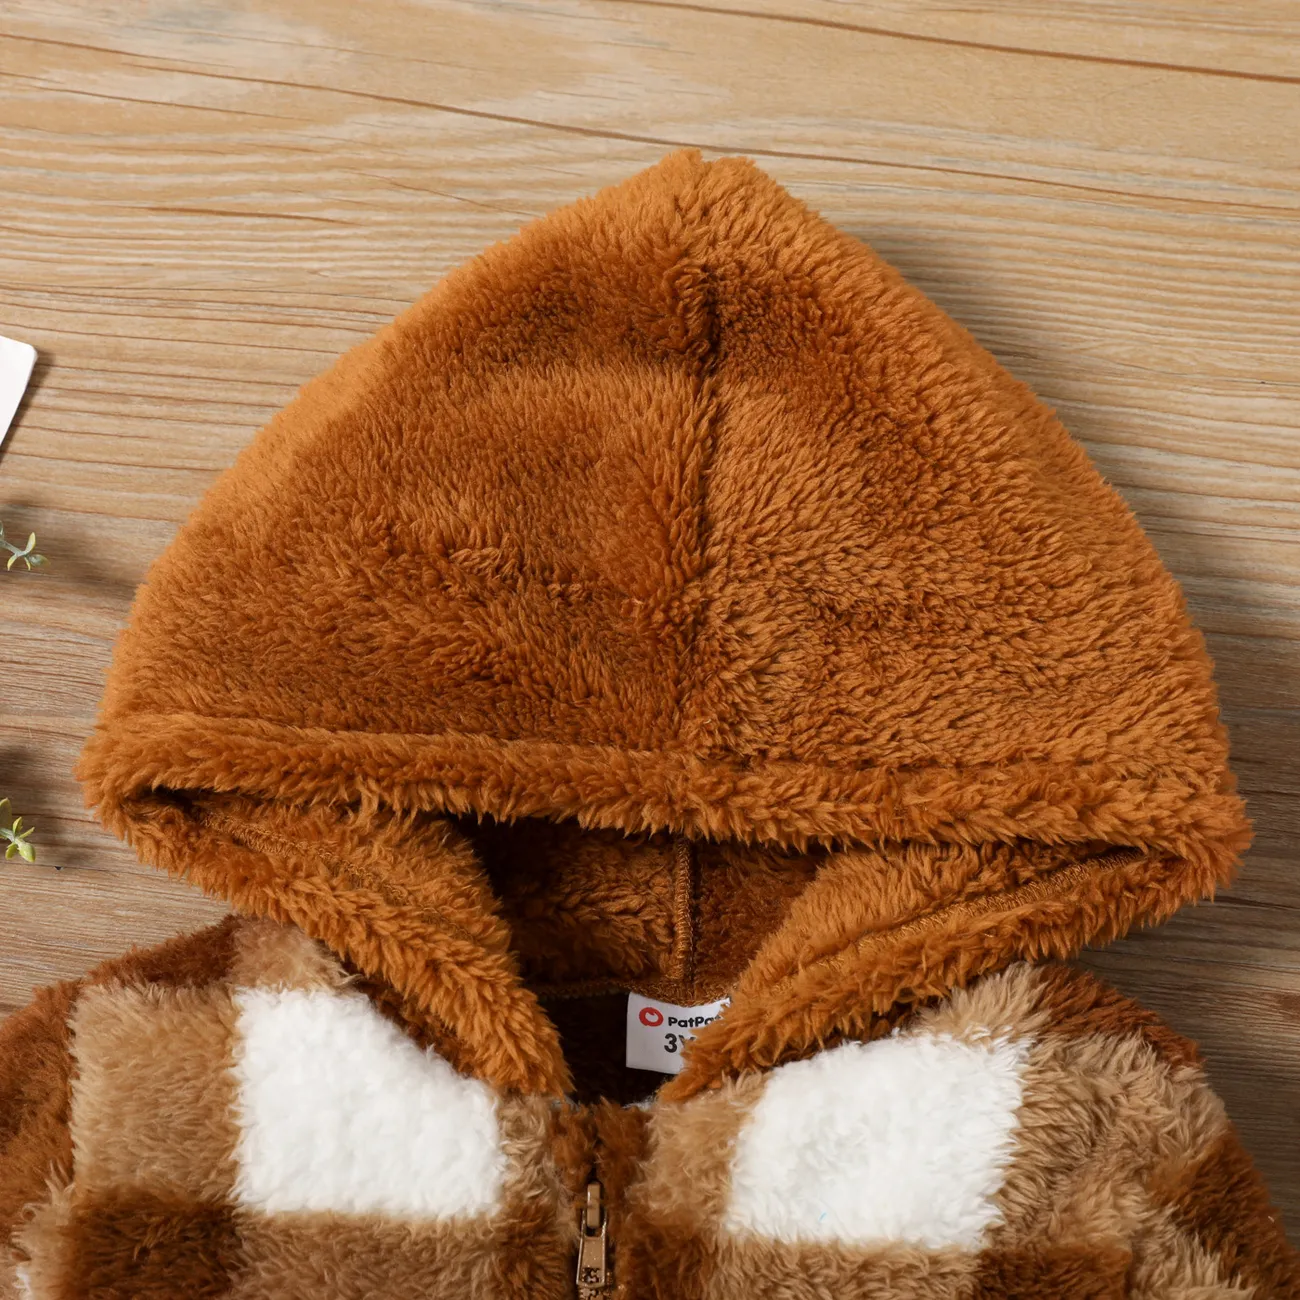 Toddler Girl Plaid Design Zipper Hooded Fluffy Jacket Coat Brown big image 1